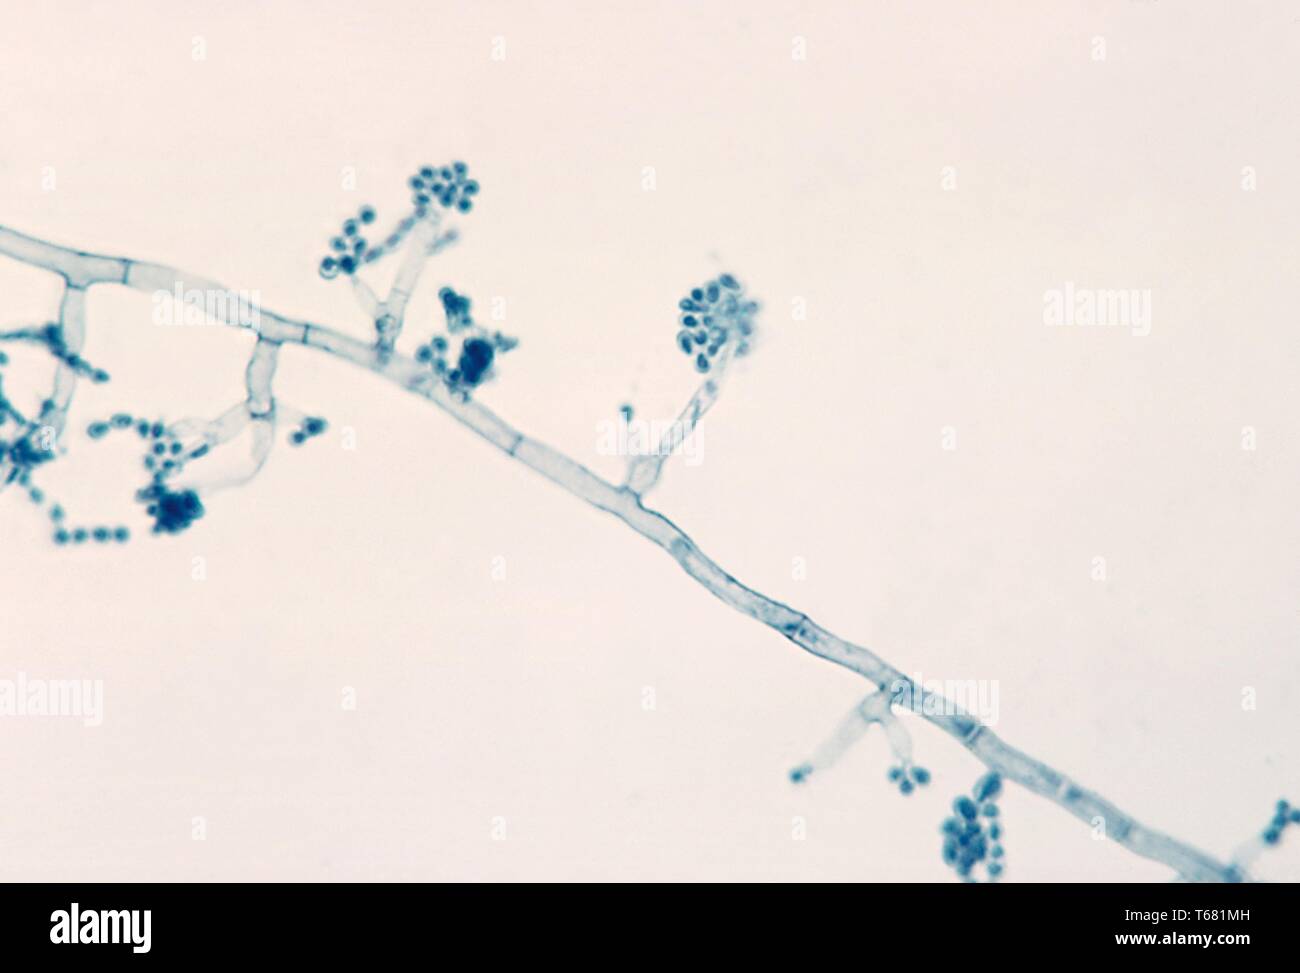 La fotomicrografia del phialides con terminale conidi del Madurella mycetomatis fungo, 1961. Immagine cortesia di centri per il controllo e la prevenzione delle malattie (CDC) / Dr Lucille K. Georg. () Foto Stock